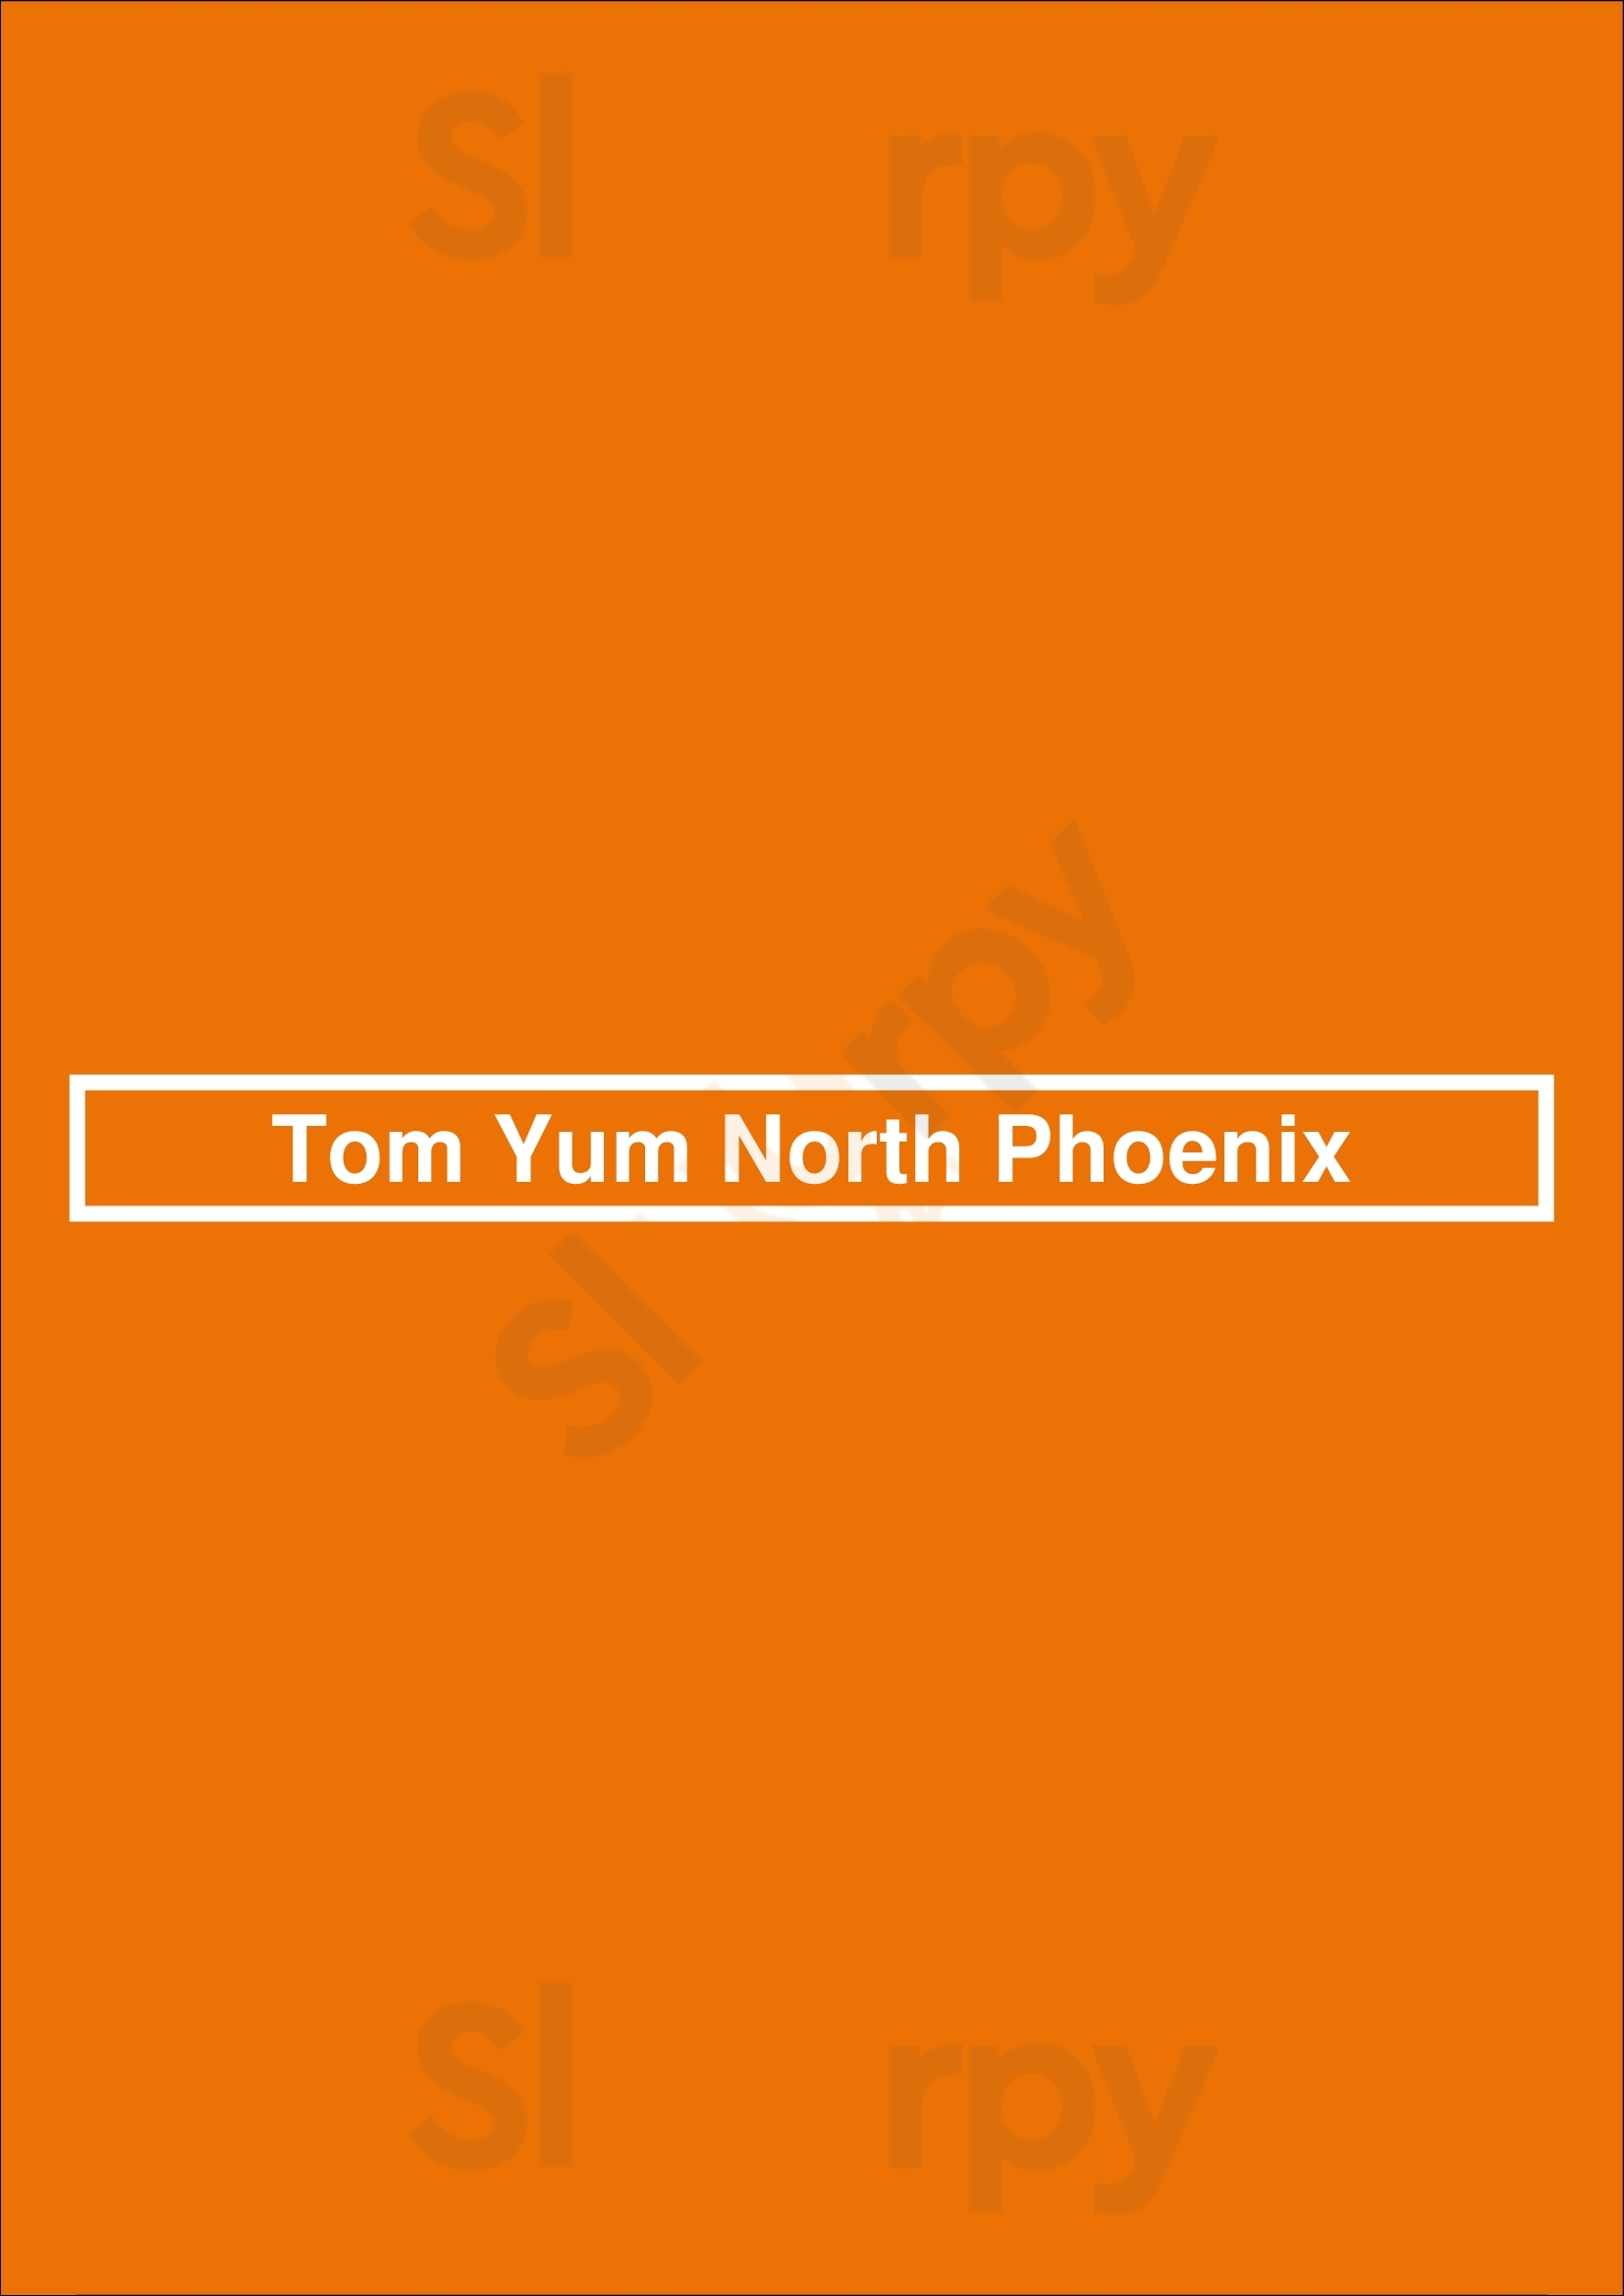 Tom Yum Thai Phoenix Menu - 1